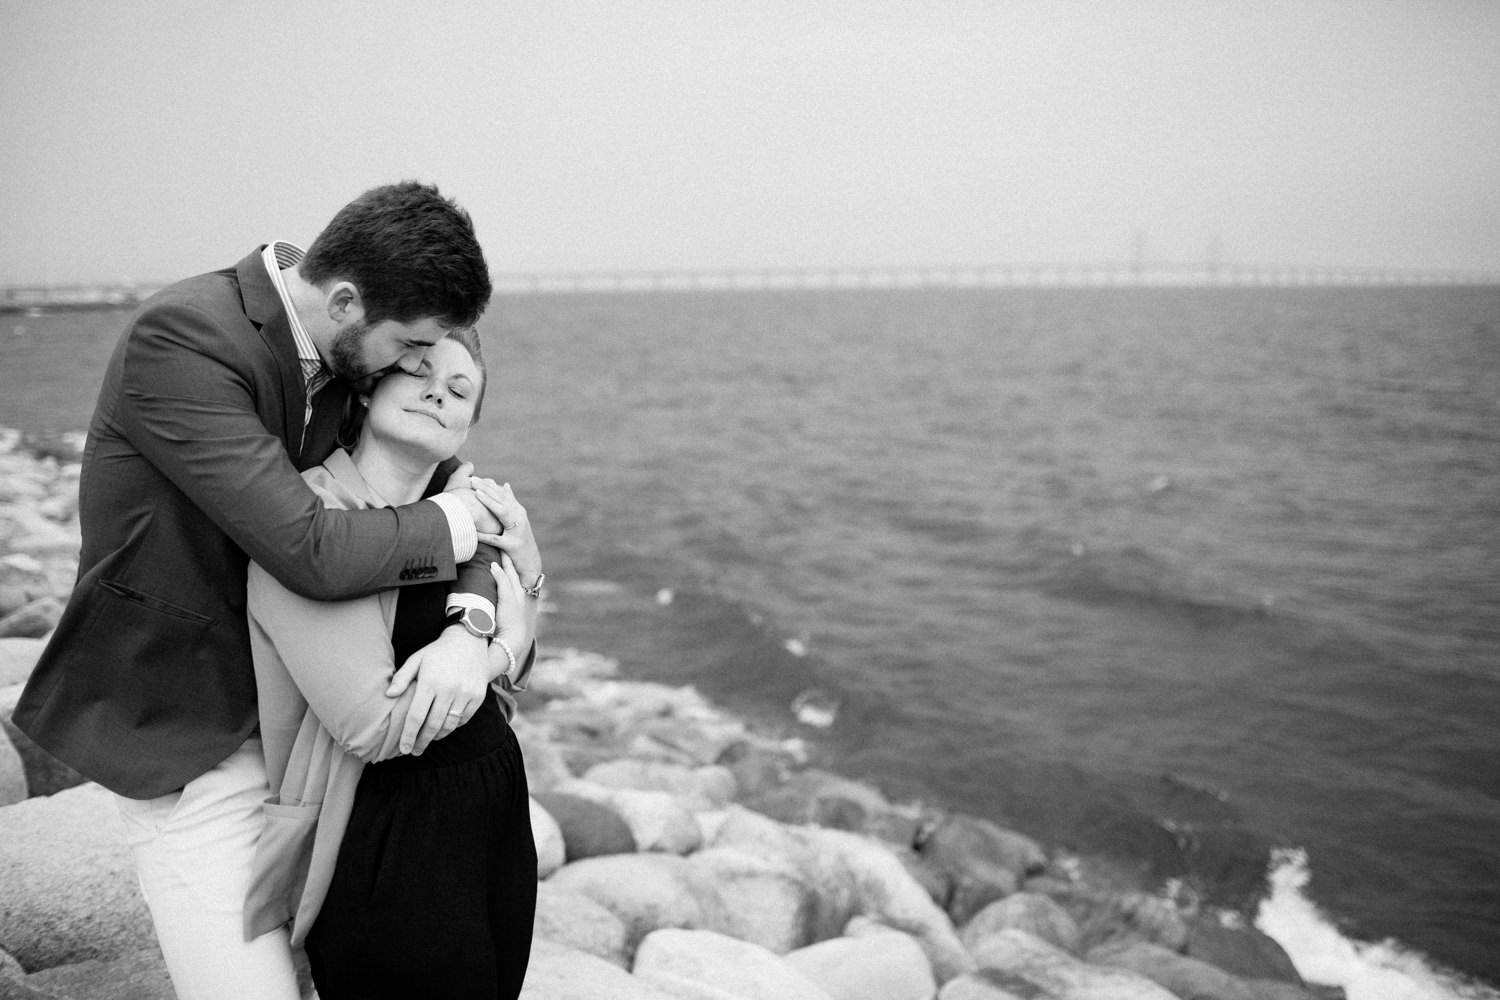 Kärleksfull bild från en parfotografering med förlovat par, Ön Limhamn i Malmö. Fotograf är Tove Lundquist, platsen är Ön, Limhamn i Malmö. Öresundsbron i bakgrunden. 